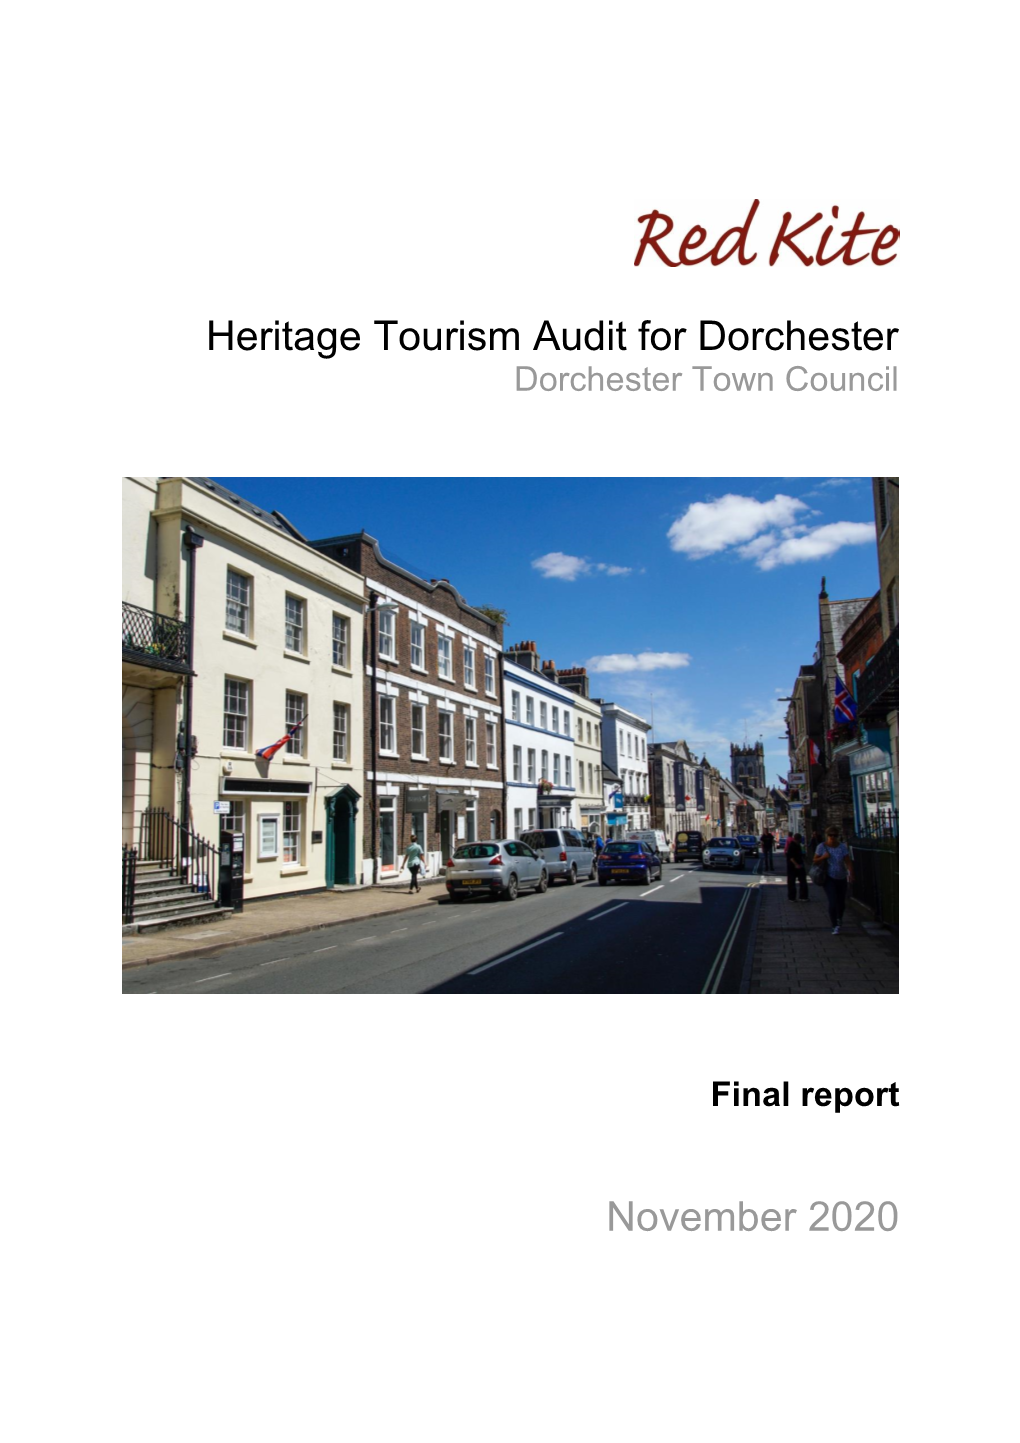 Heritage Tourism Audit for Dorchester November 2020